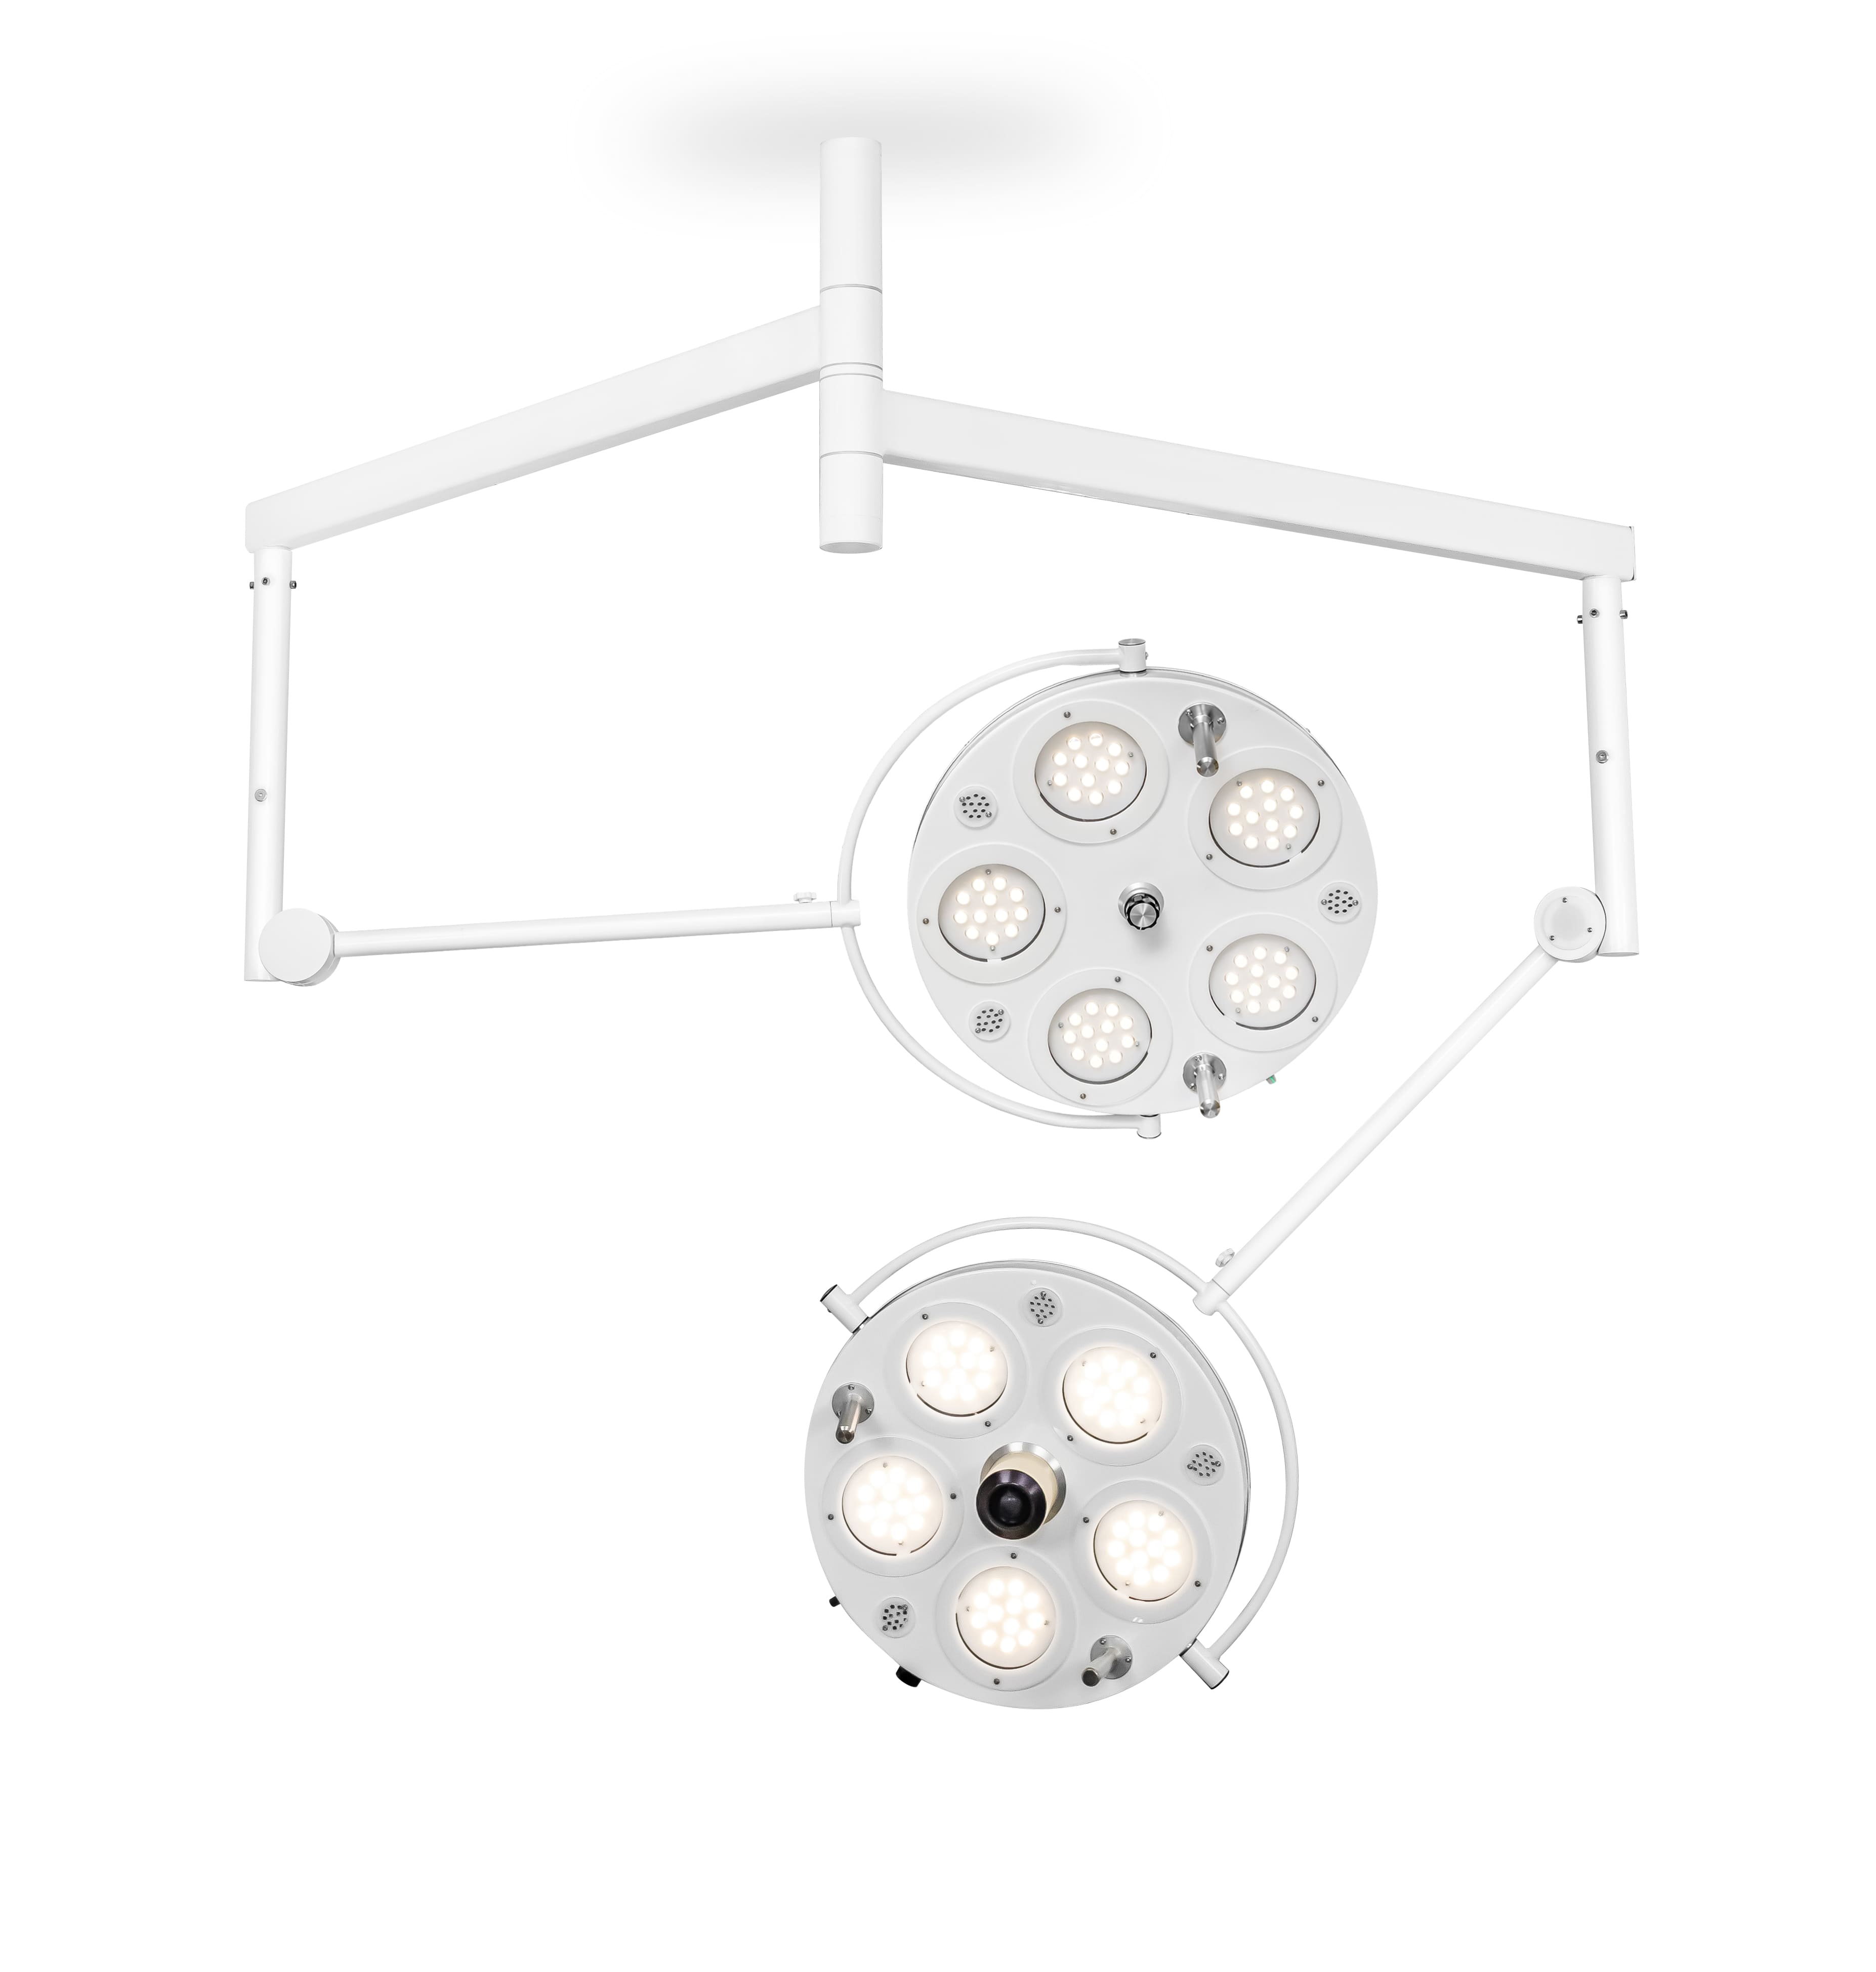 Медицинский двухкупольный хирургический светильник «FotonFly 6S5С», потолочный подвес - FotonFly 6S5С